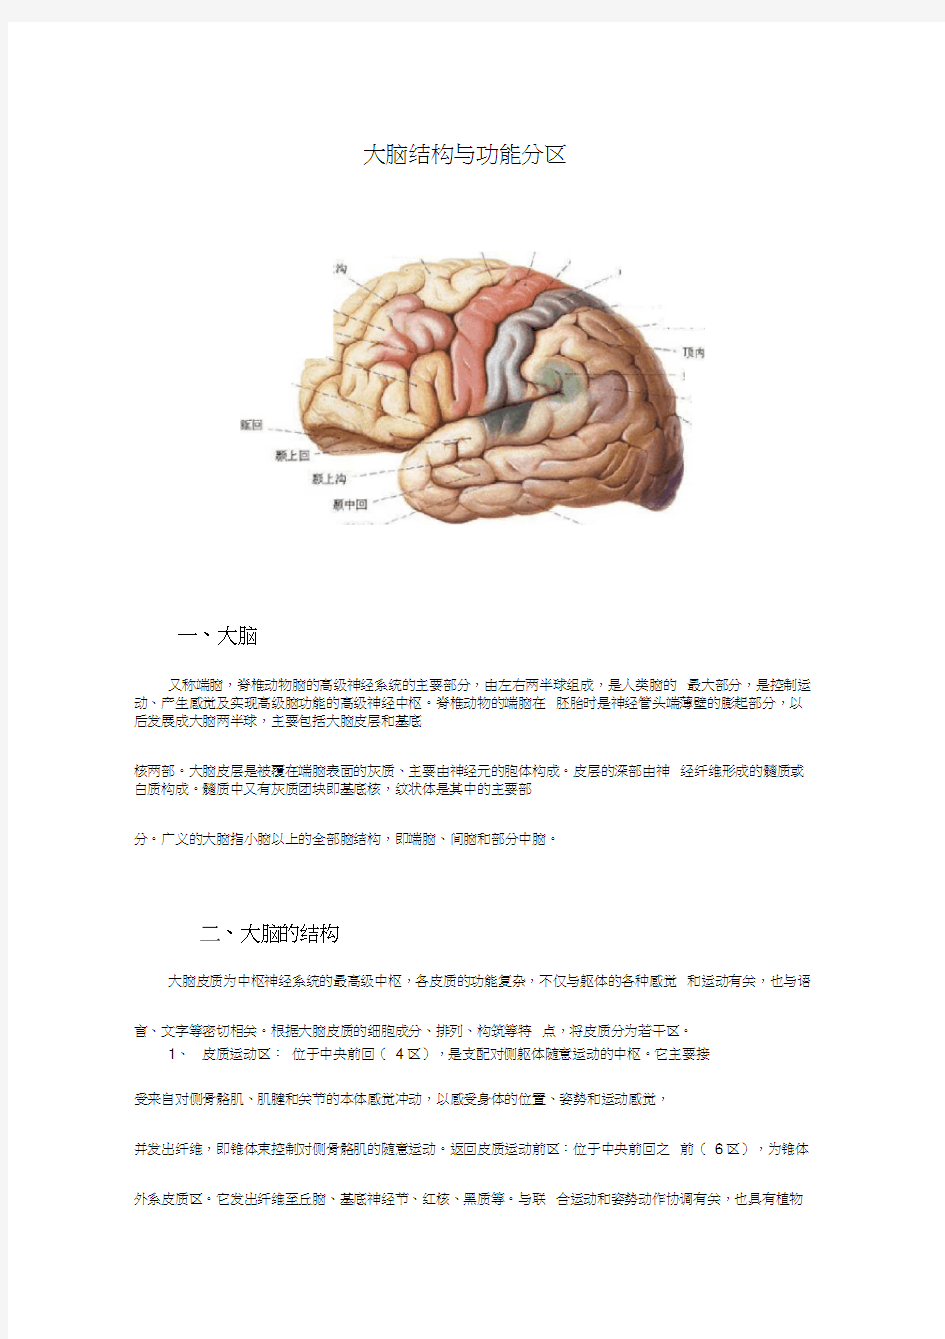 (完整版)大脑结构与功能分区